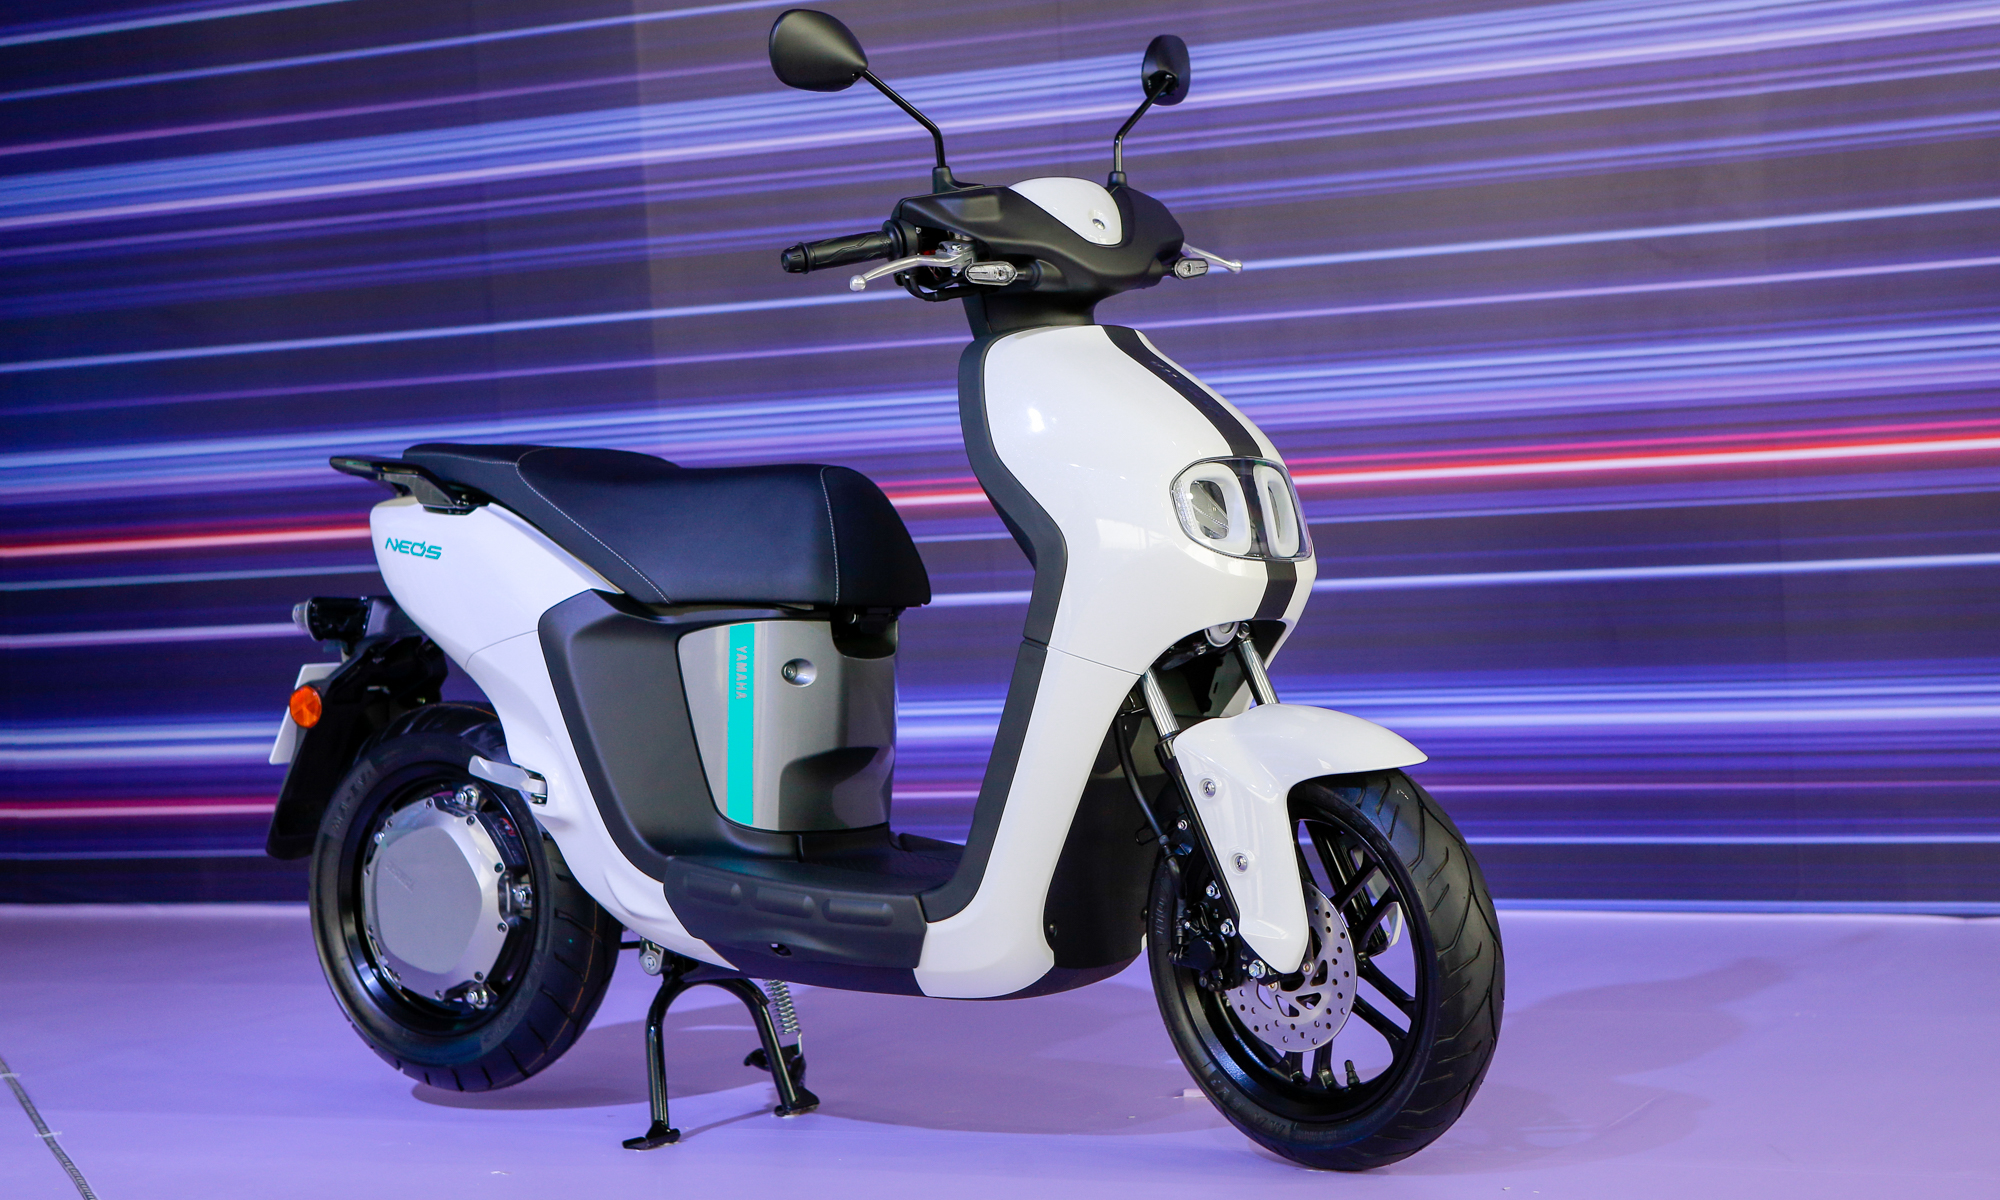 Xe điện Yamaha Neos ra mắt, giá 50 triệu đồng